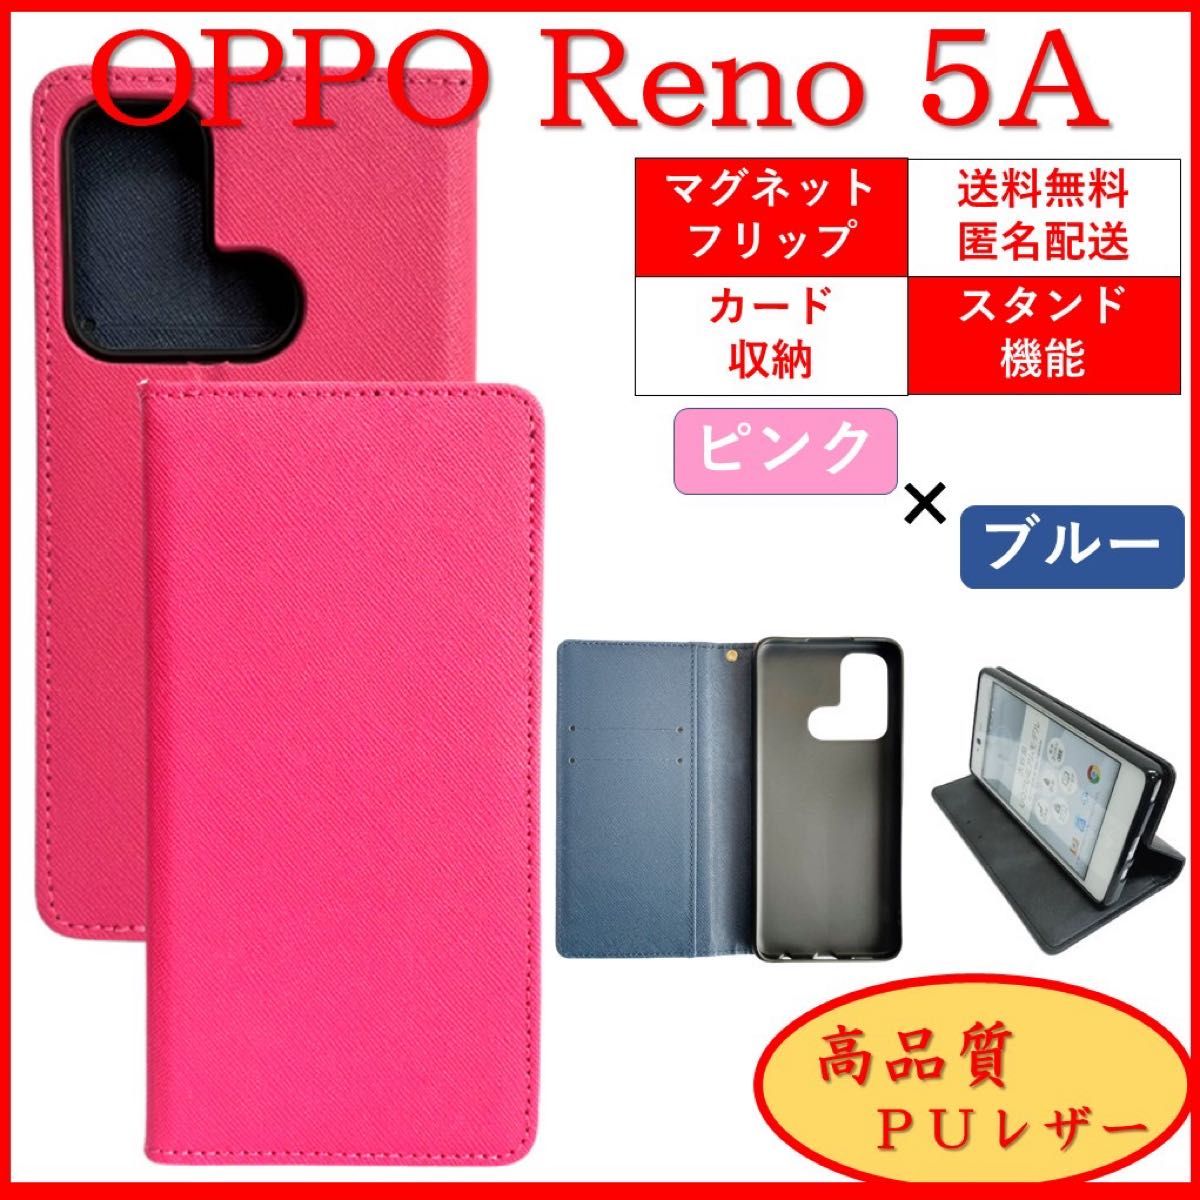 OPPO Reno 5A オッポ リノ スマホケース 手帳型 スマホカバー カード収納 カードポケット オシャレ ピンク×ブルー